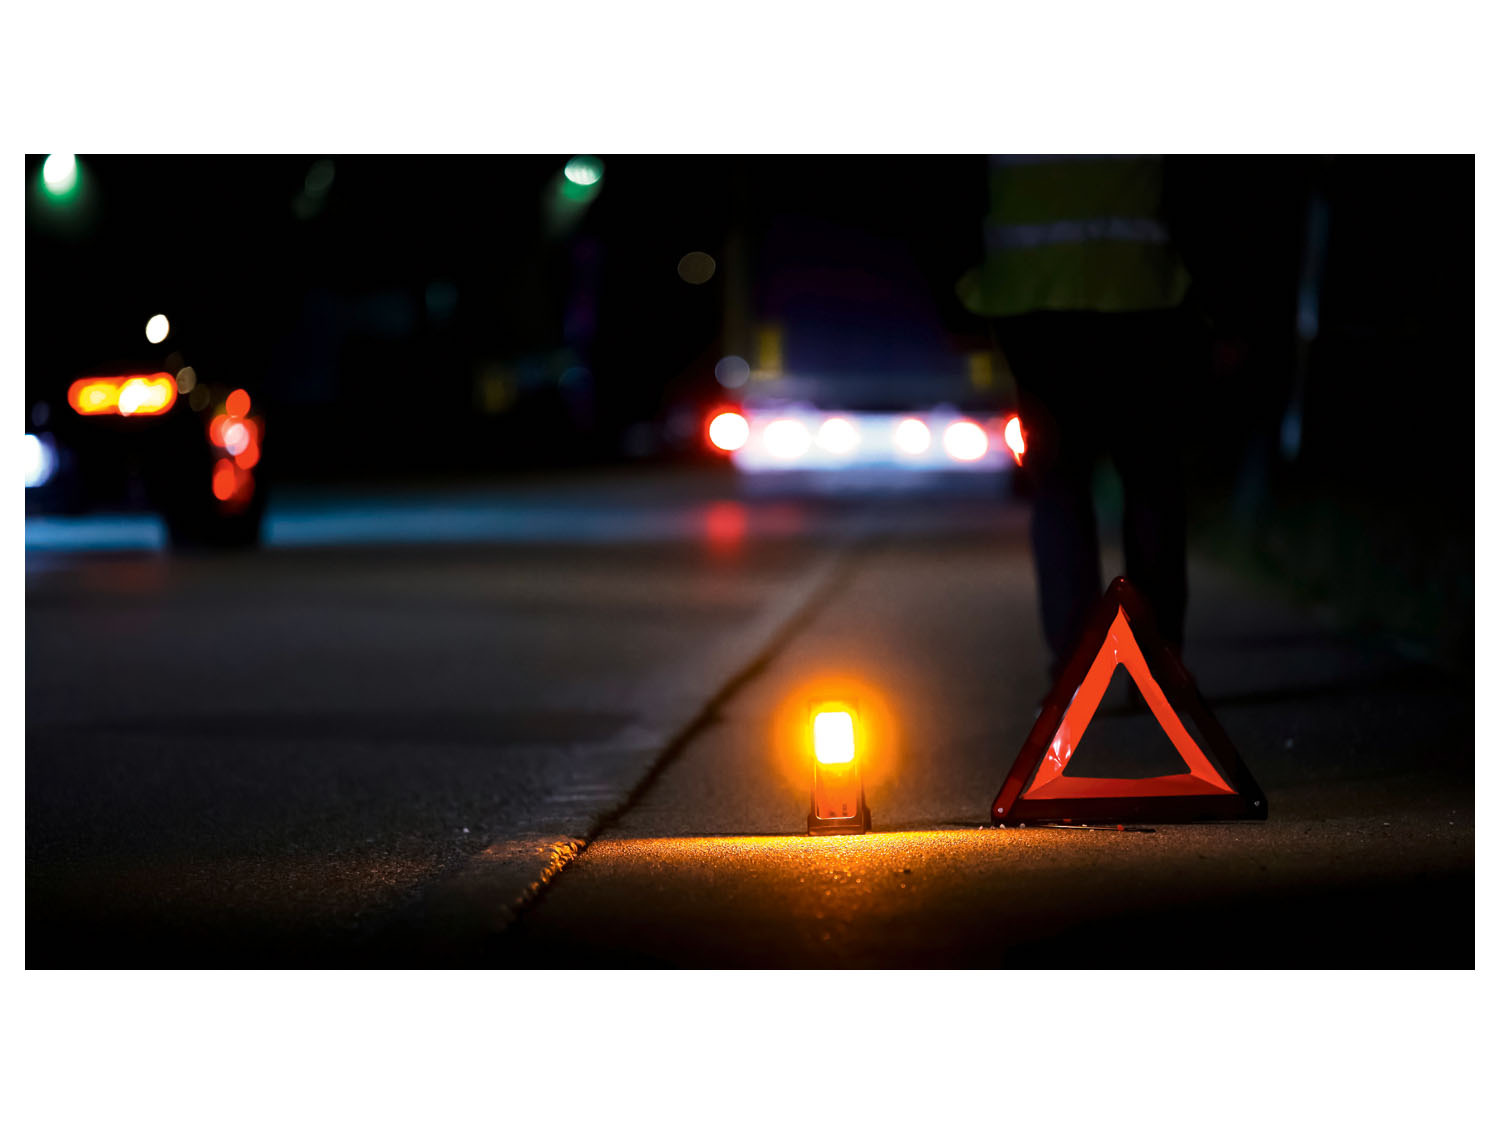 OSRAM Signal »TA19« LED Warnleuchte / Taschenlampe